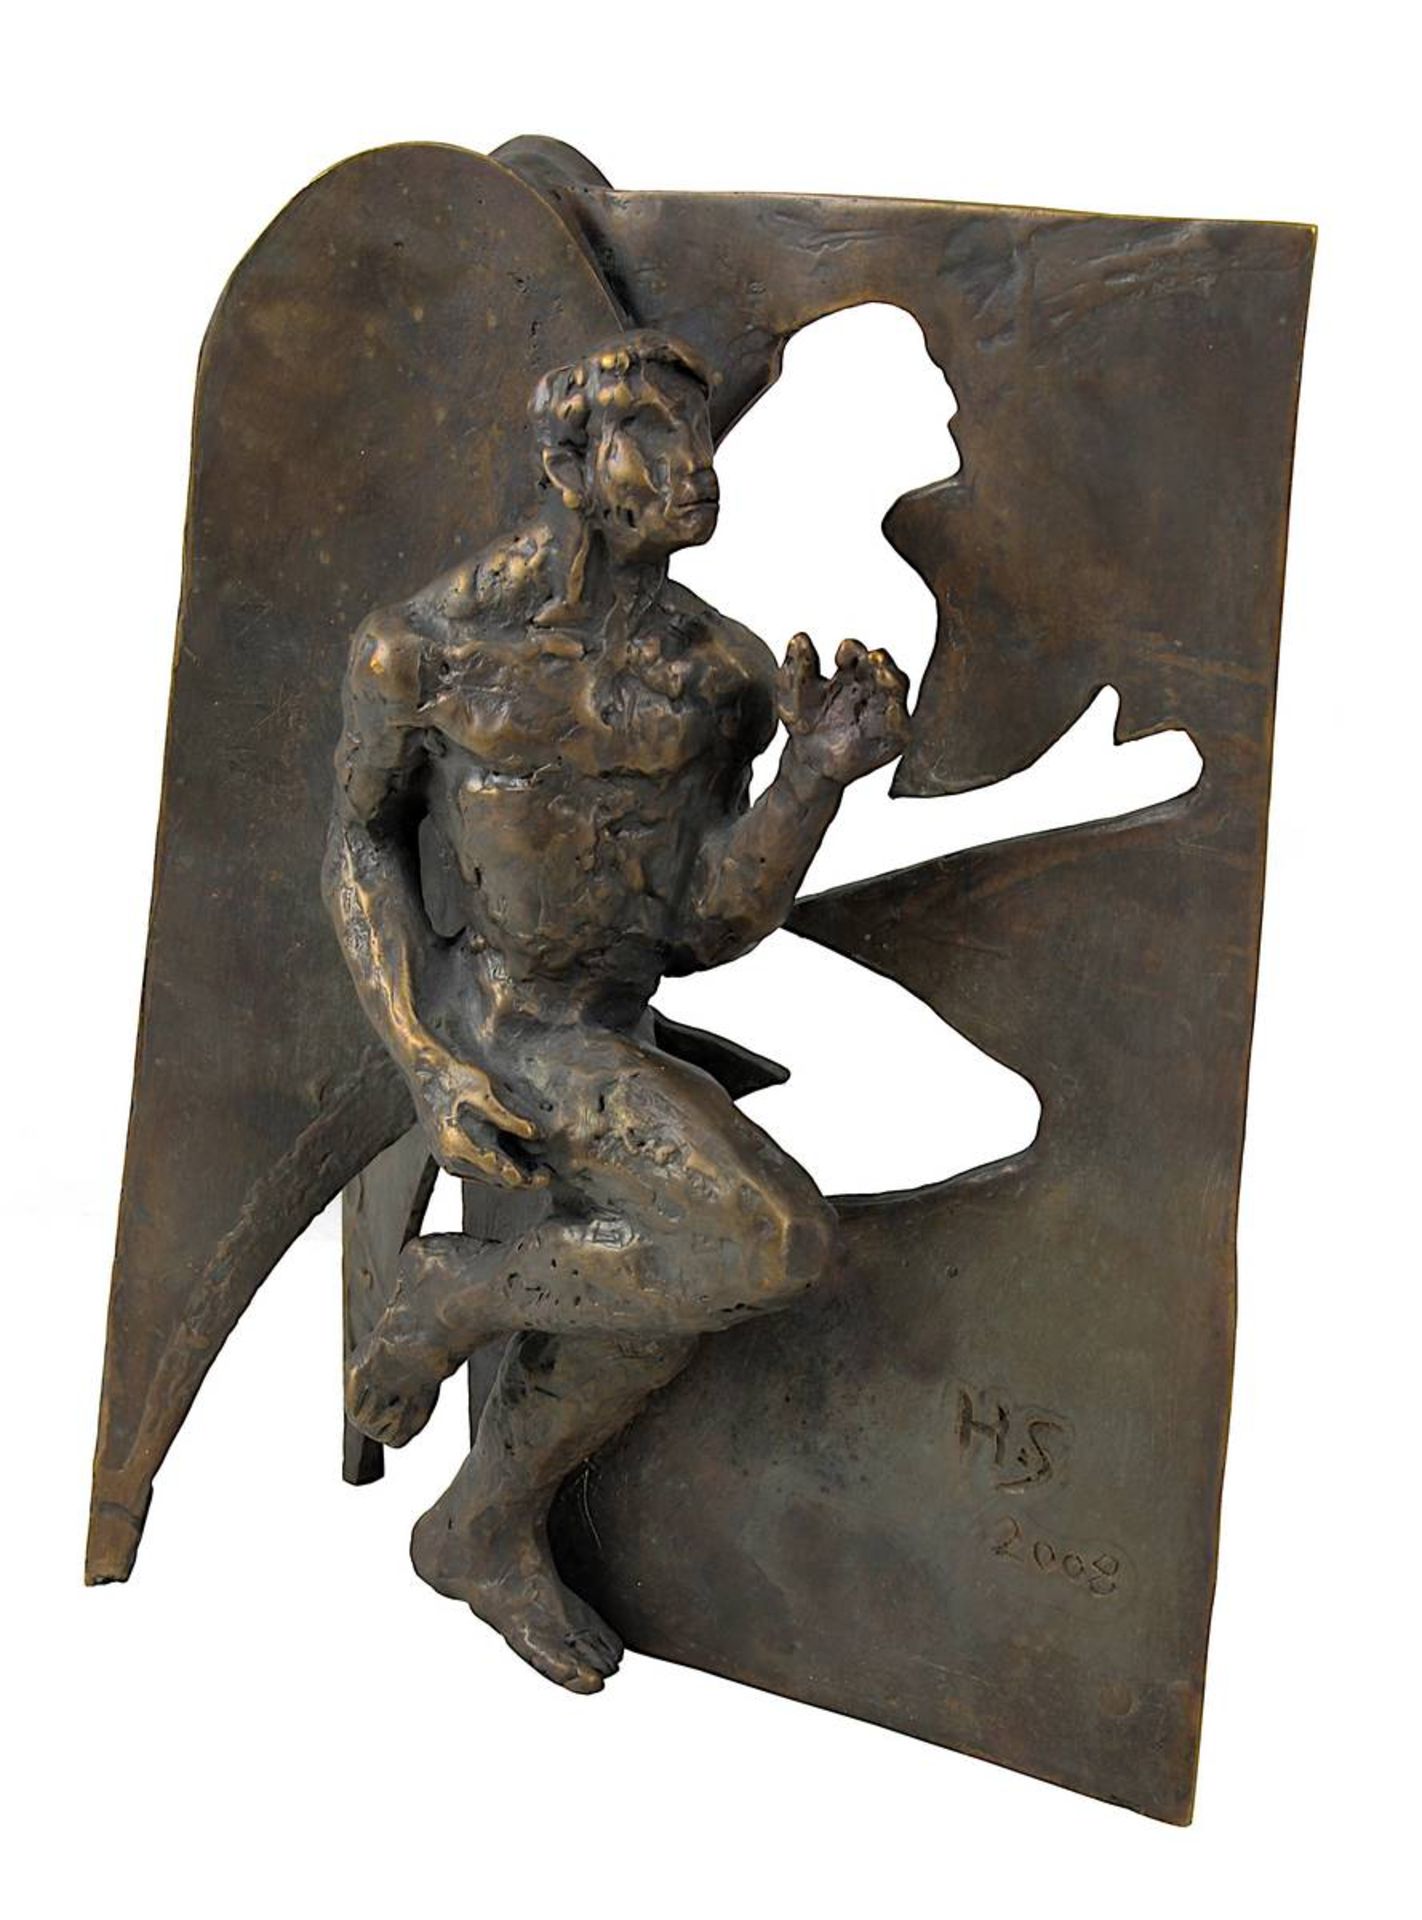 Schröder, Hans (Saarbrücken 1930 - 2010 Saarbrücken), Läufer vor einer Wand, Bronze mit schöner